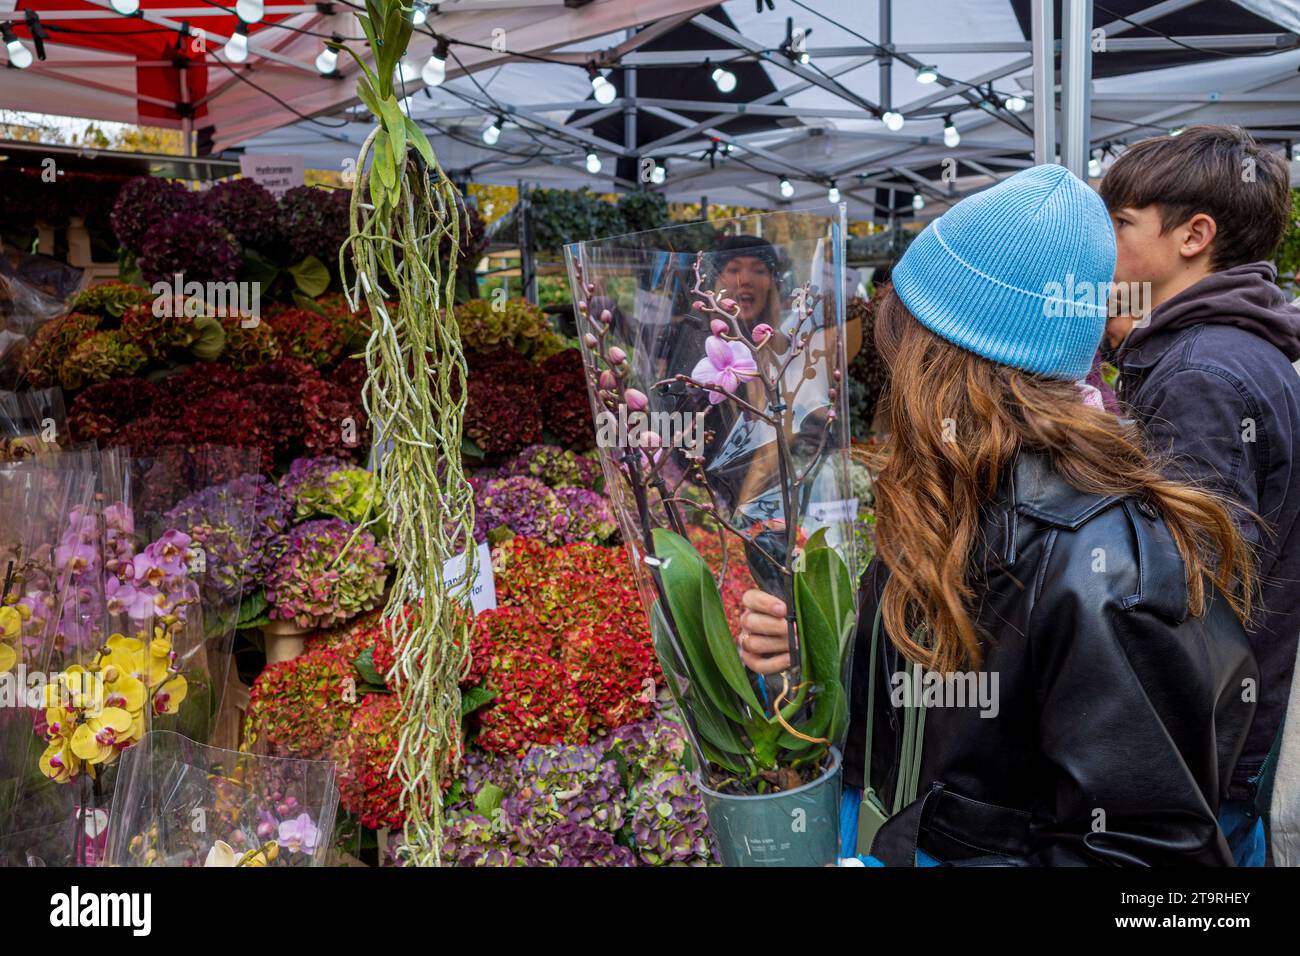 Columbia Road Flower Market London - un marché très populaire le dimanche dans l'est de Londres Banque D'Images